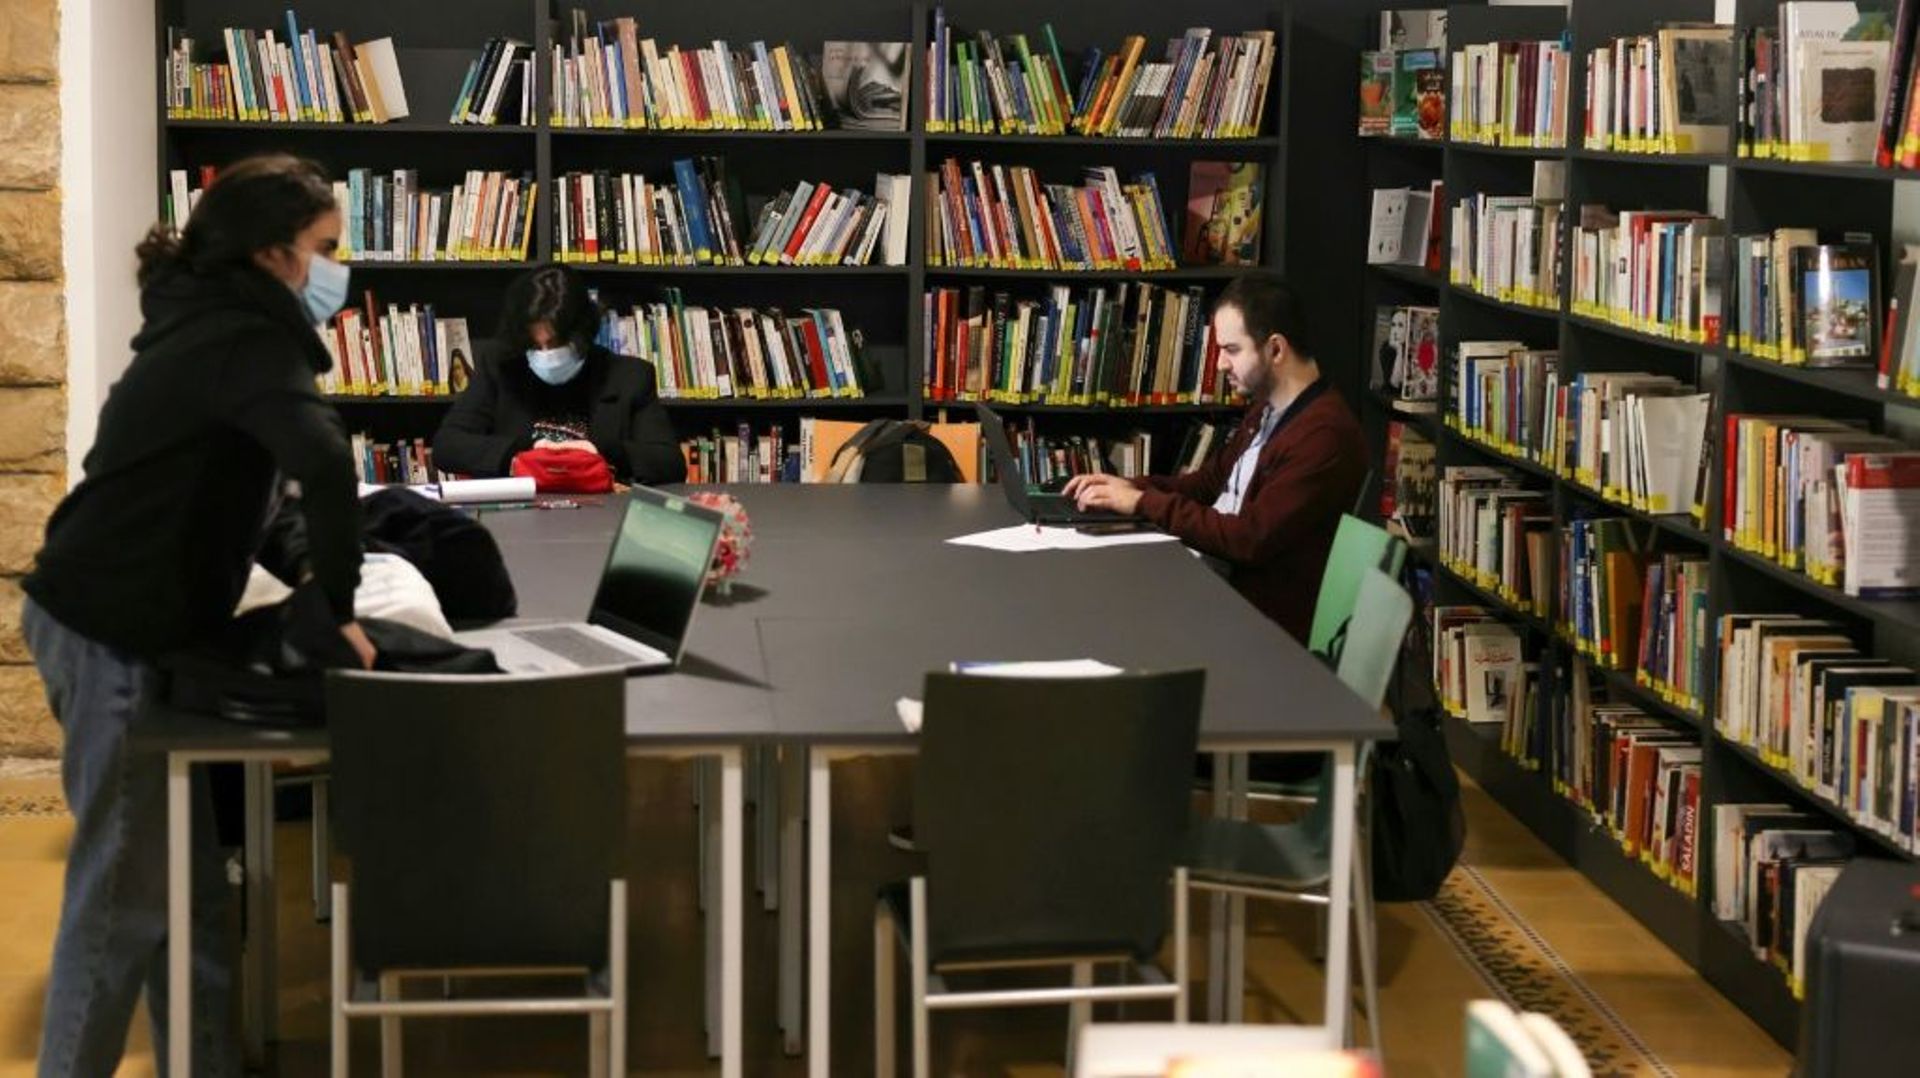 Des personnes travaillent sur leur ordinateur portable dans l’une des bibliothèques publiques de Beyrouth, le 11 février 2022 au Liban